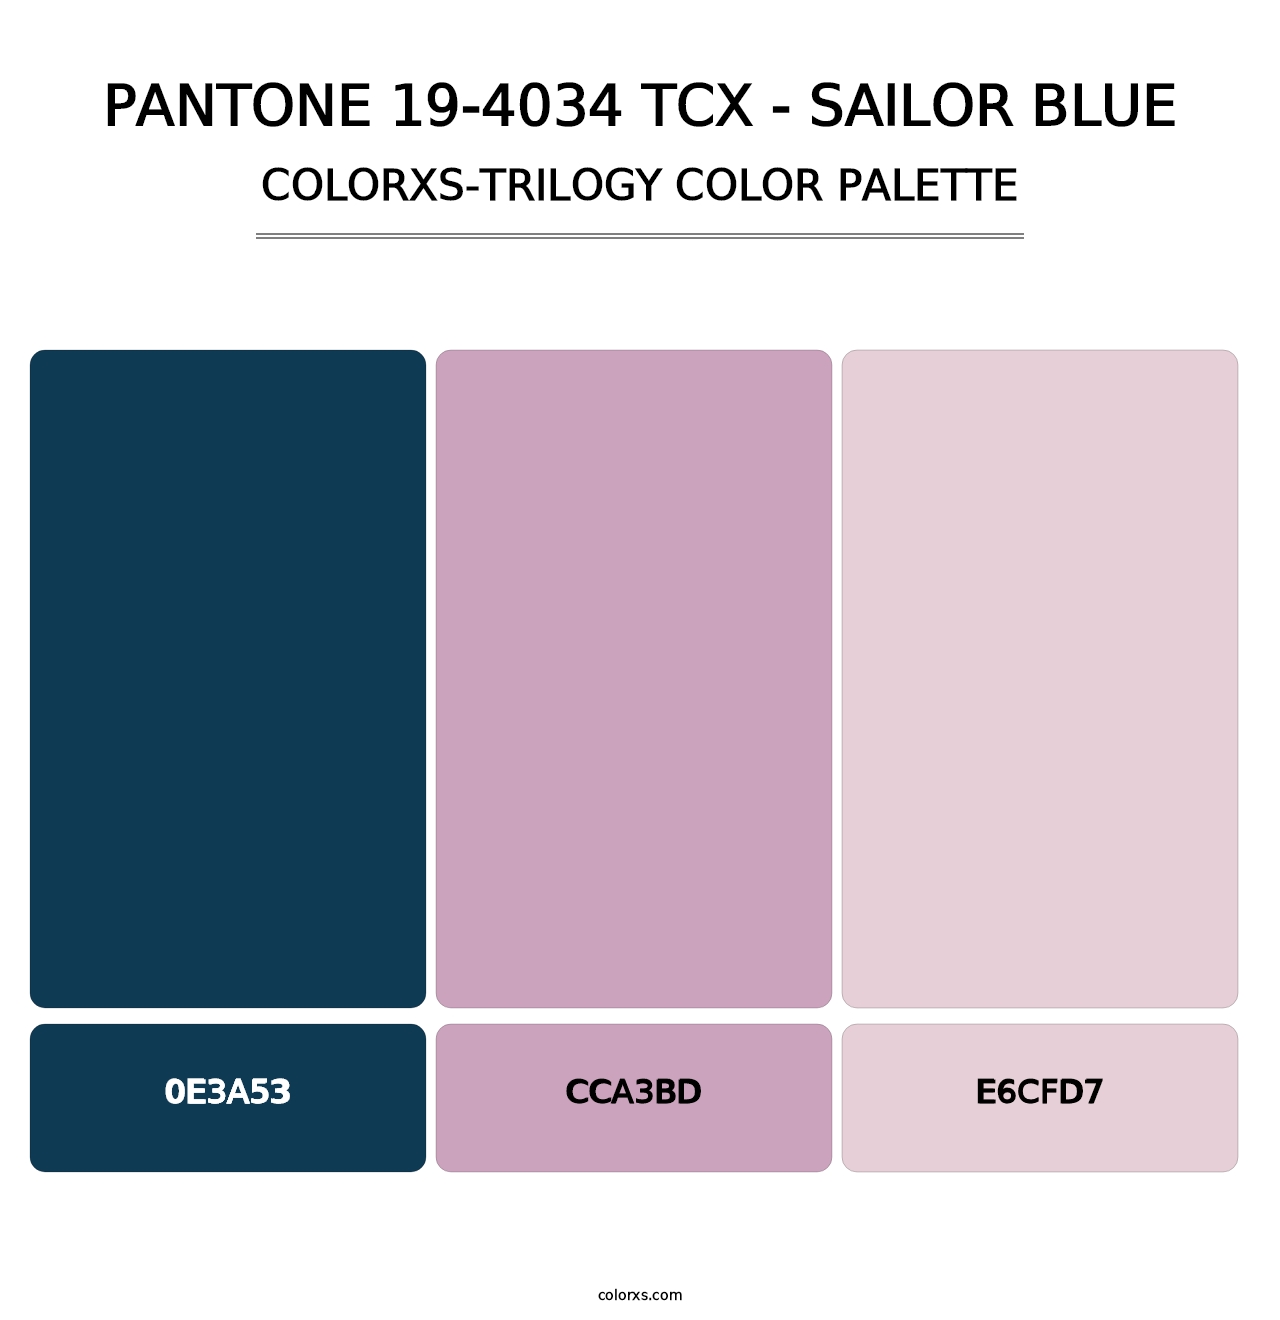 PANTONE 19-4034 TCX - Sailor Blue - Colorxs Trilogy Palette